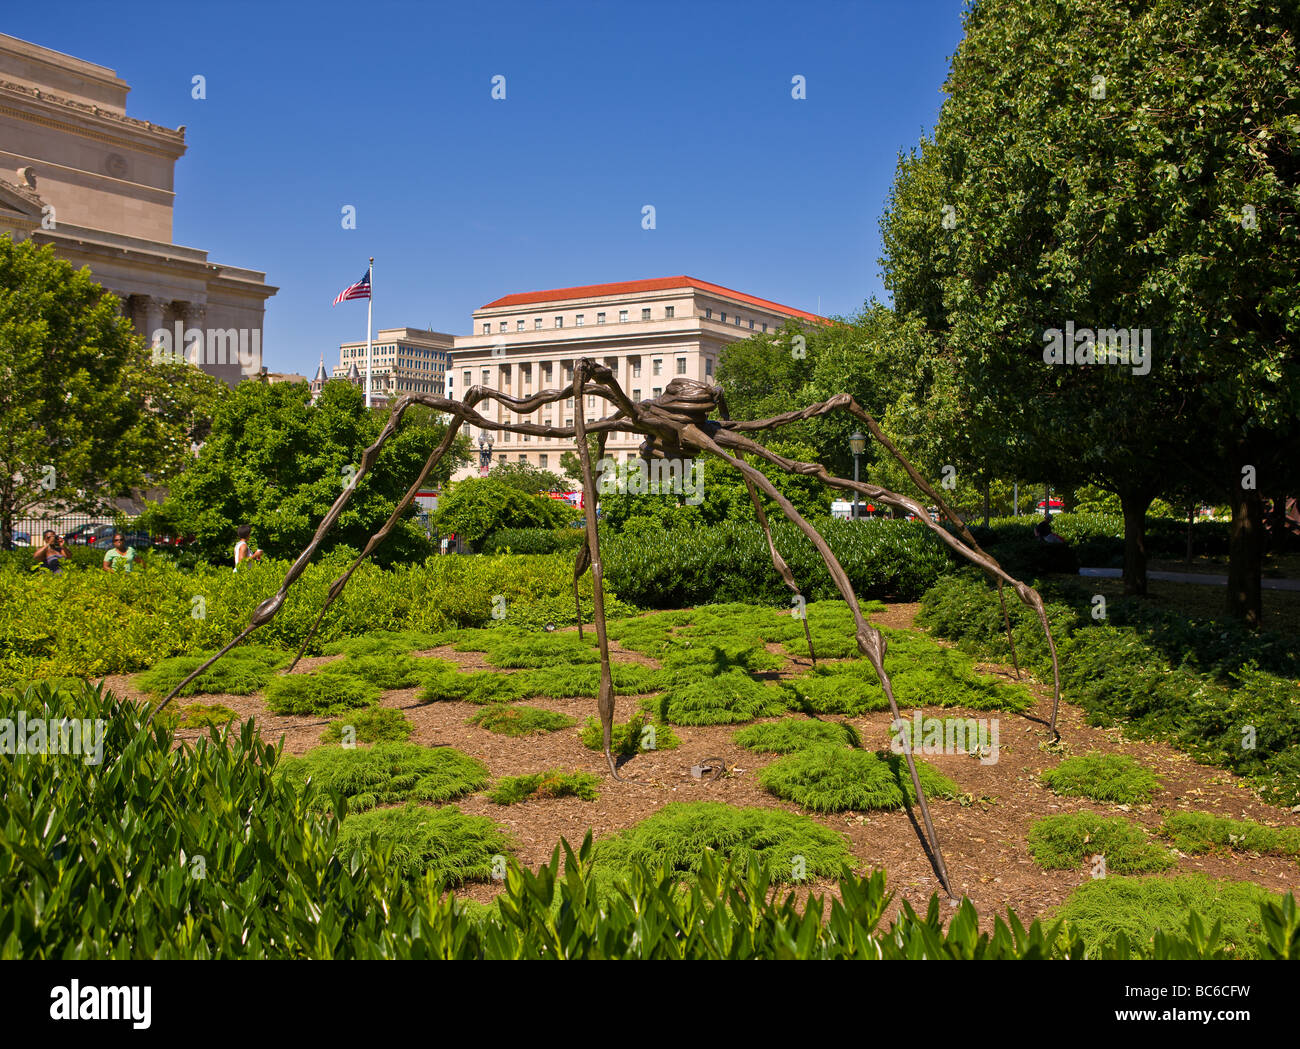 WASHINGTON DC USA Spinne Skulptur von Louise Bourgeois in der National Gallery of Art Sculpture Garden Stockfoto